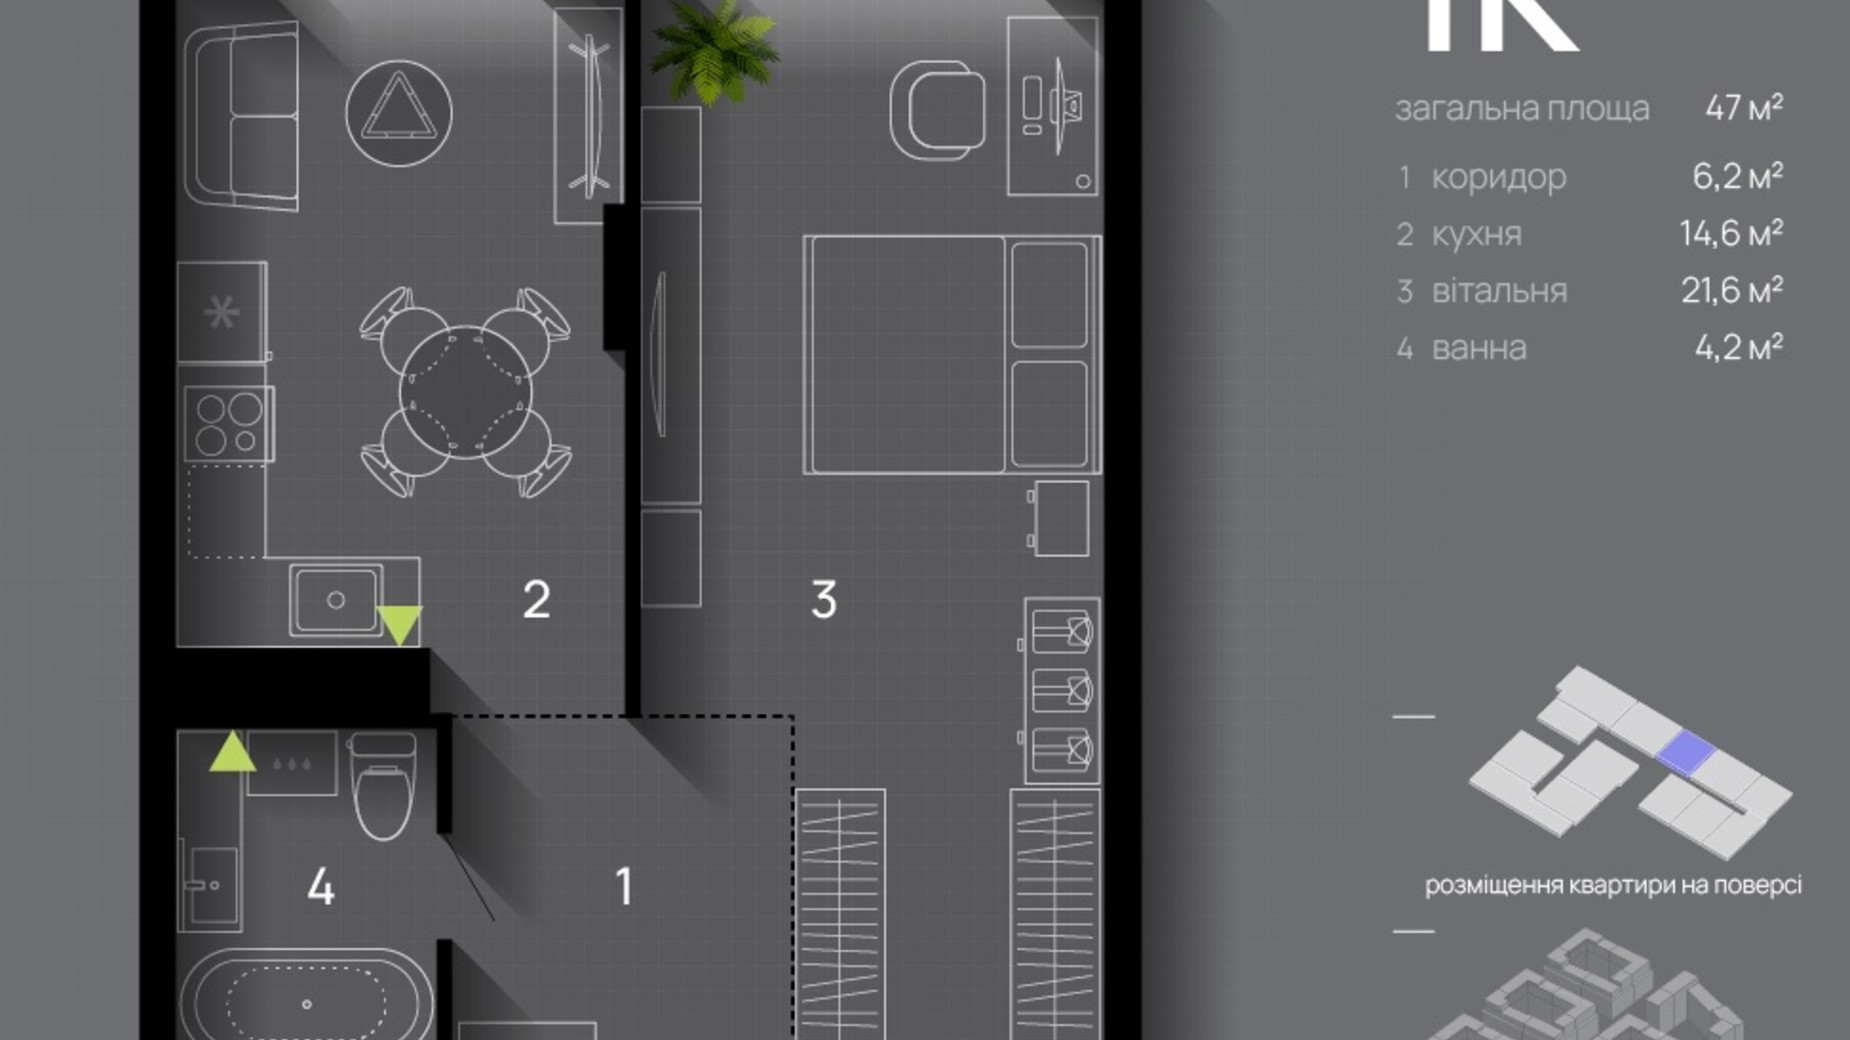 Планировка 1-комнатной квартиры в ЖК Manhattan Up 47 м², фото 656752